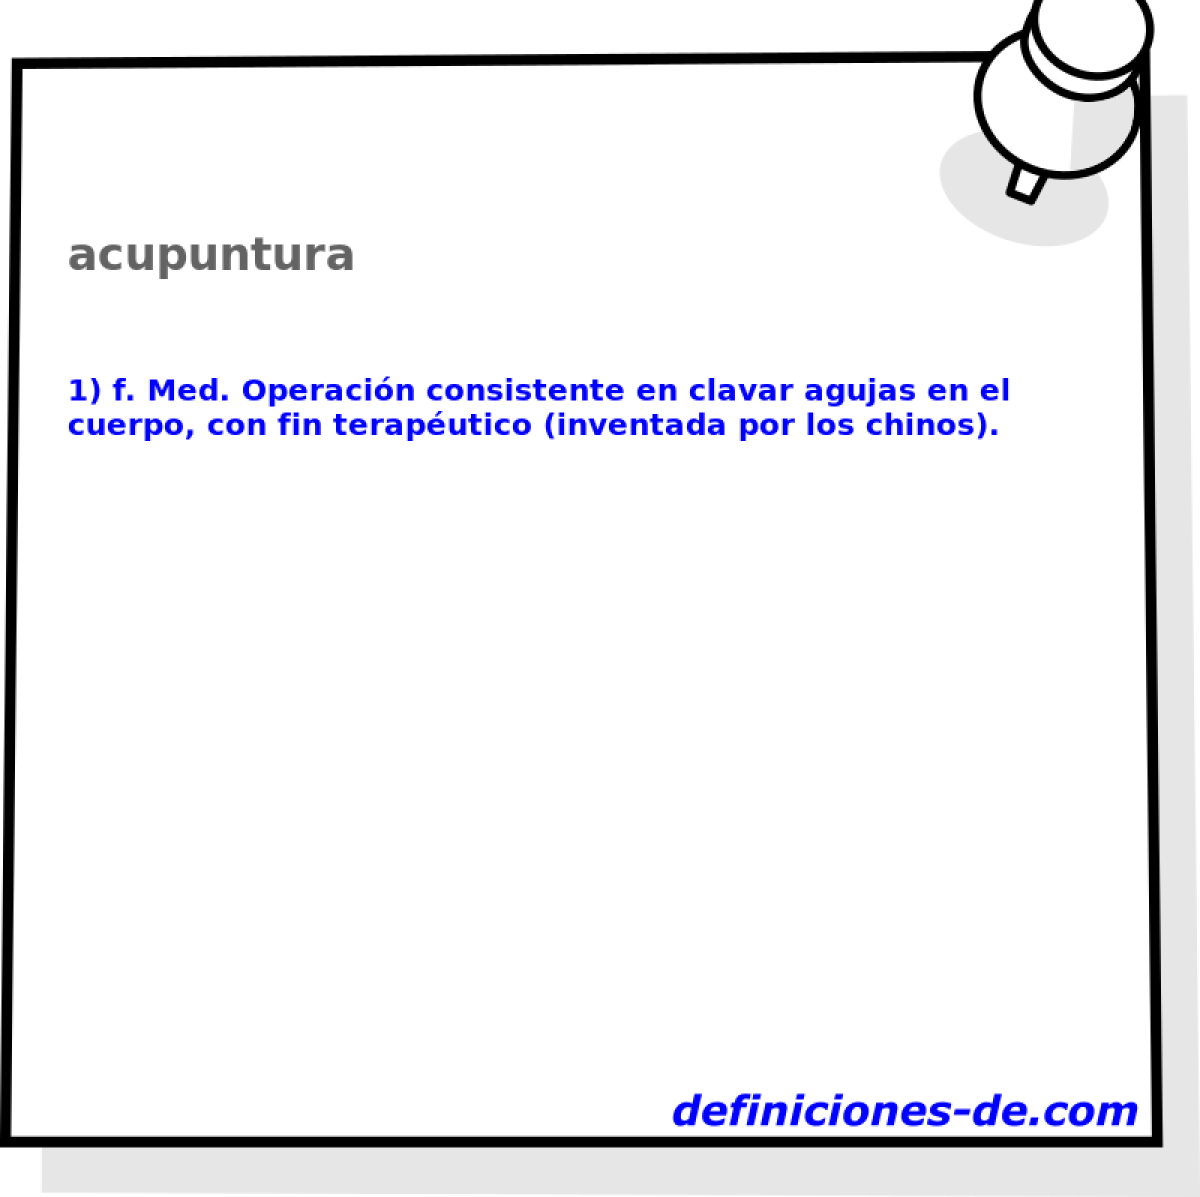 acupuntura 